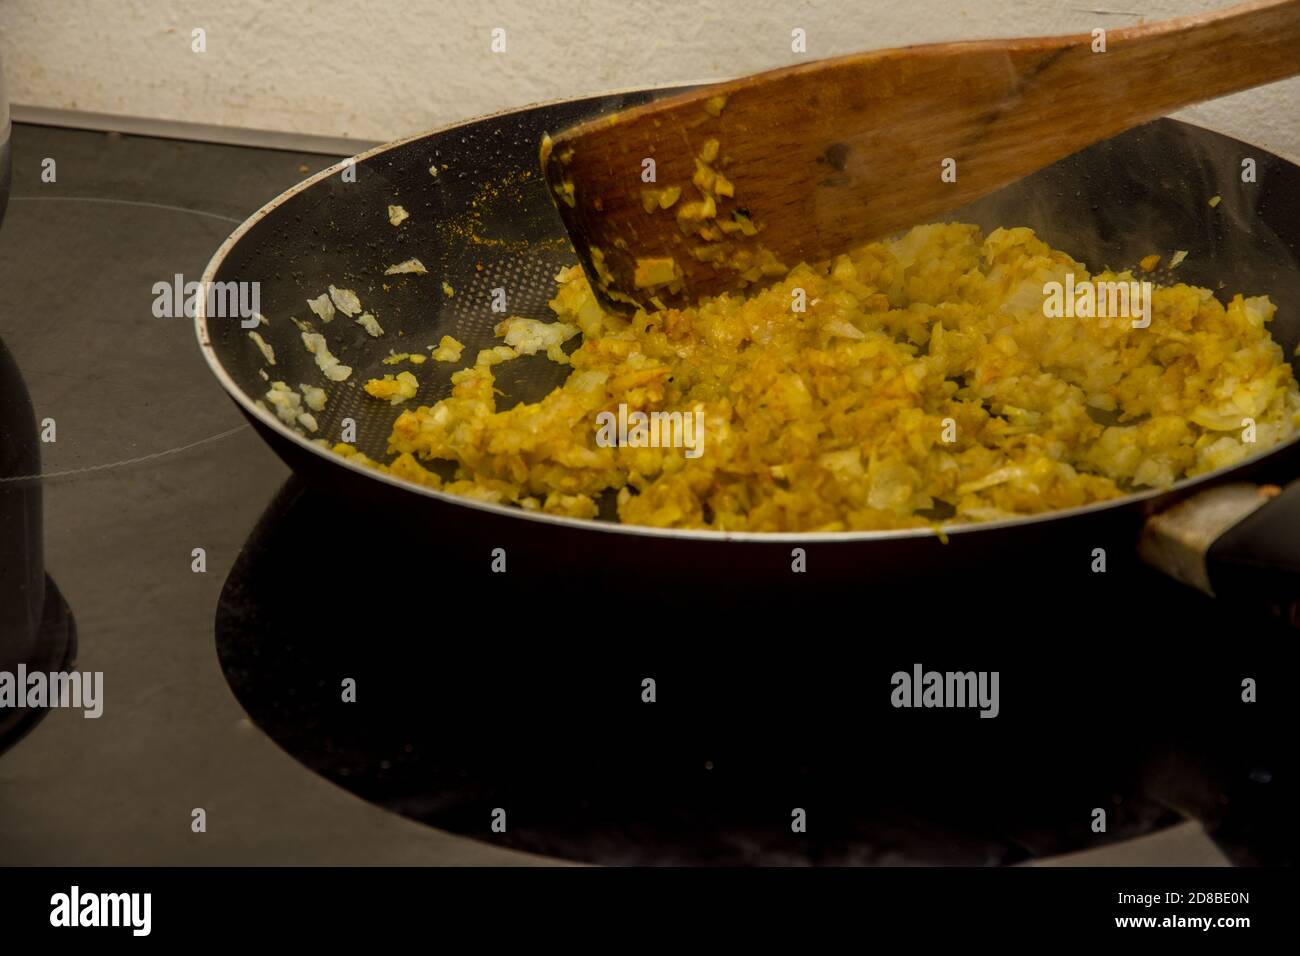 Mélanger et frire l'oignon avec des condiments orange et jaune indiens dans le récipient noir Banque D'Images